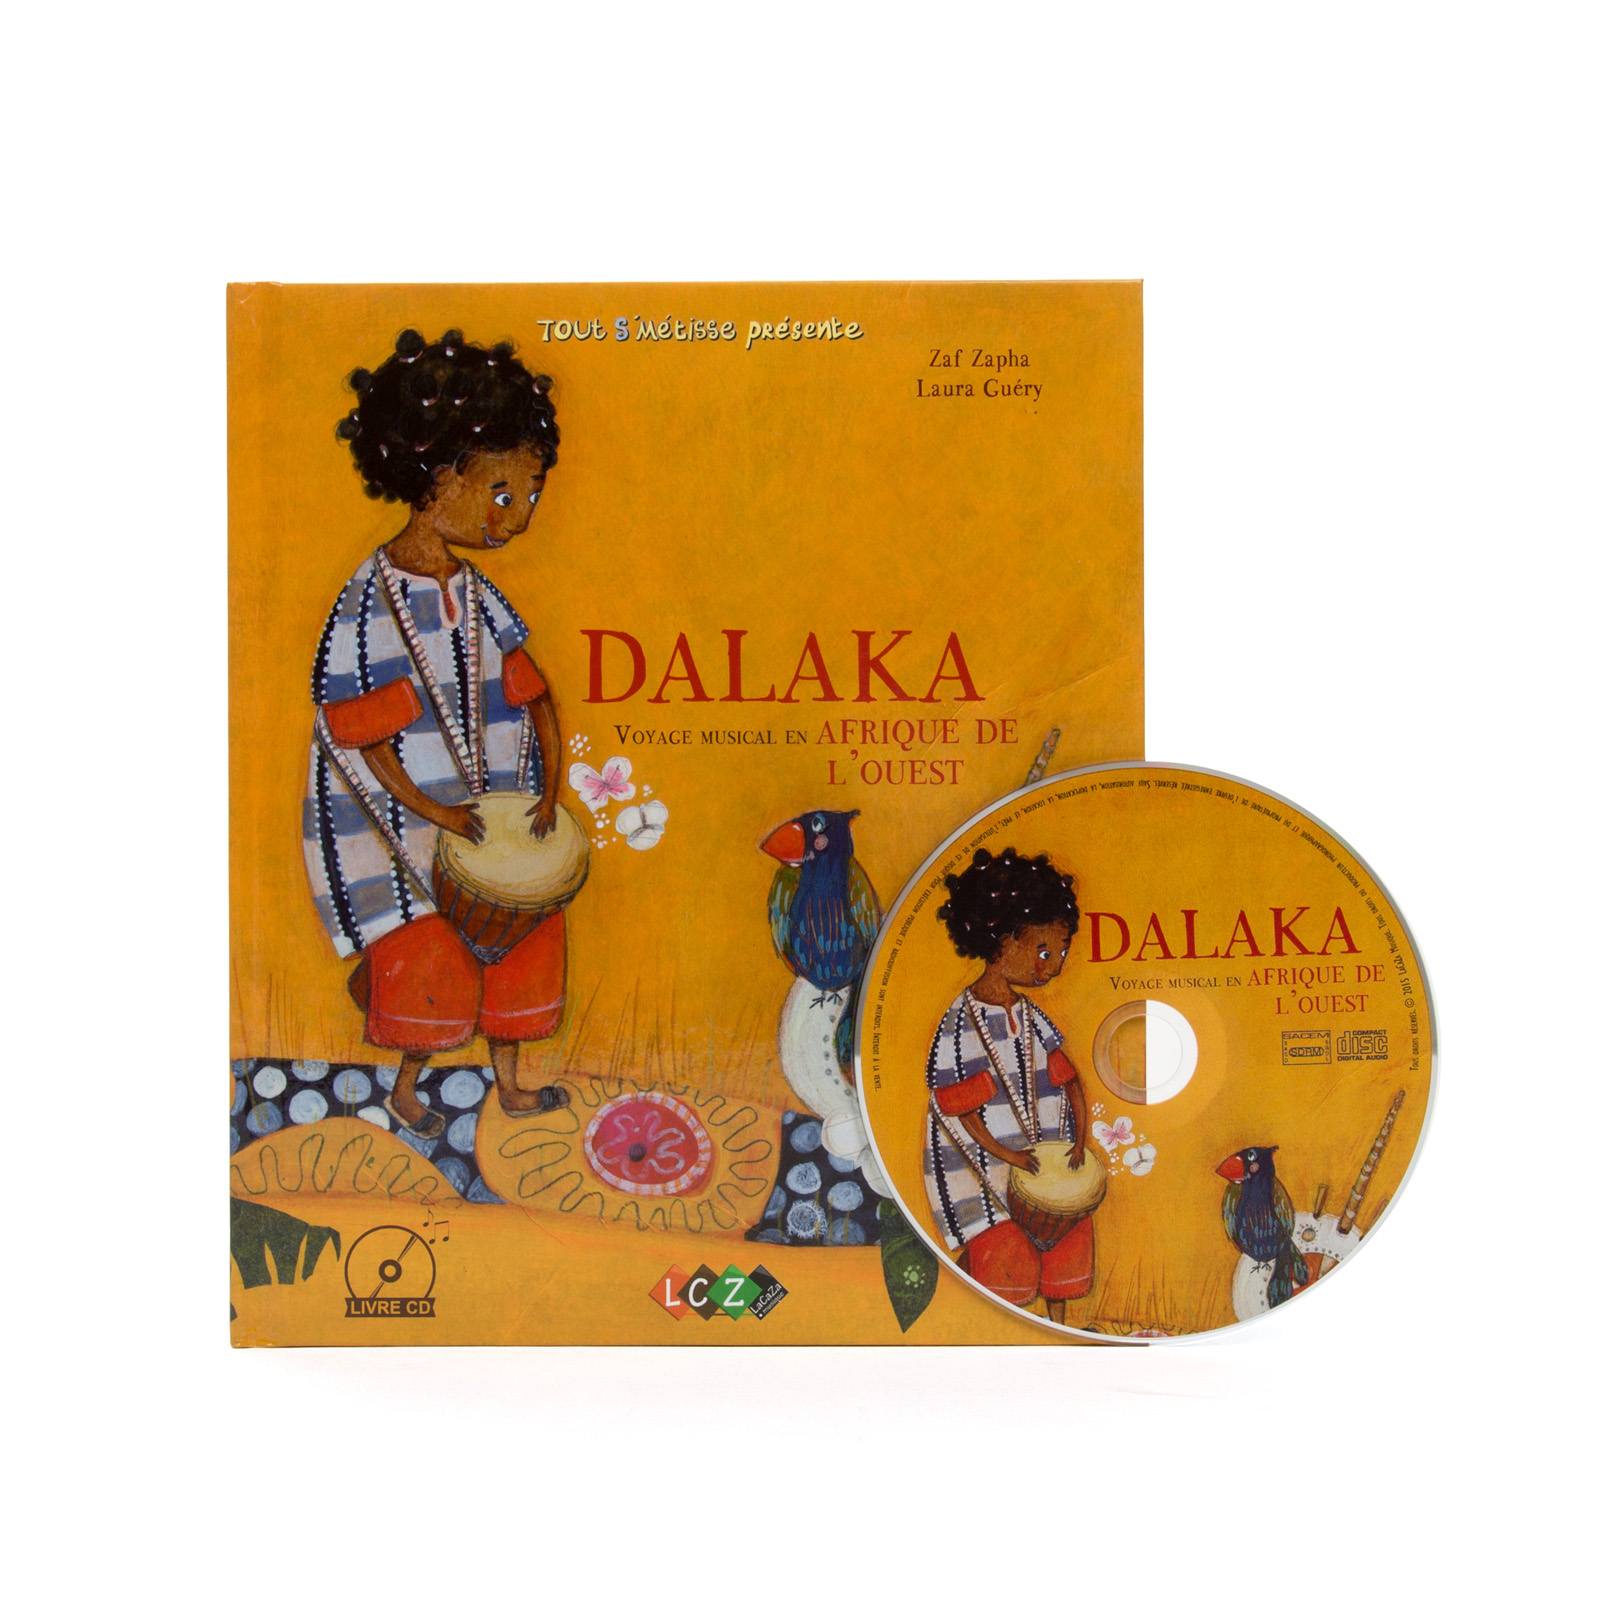 Dalaka, voyage en Afrique de l'Ouest